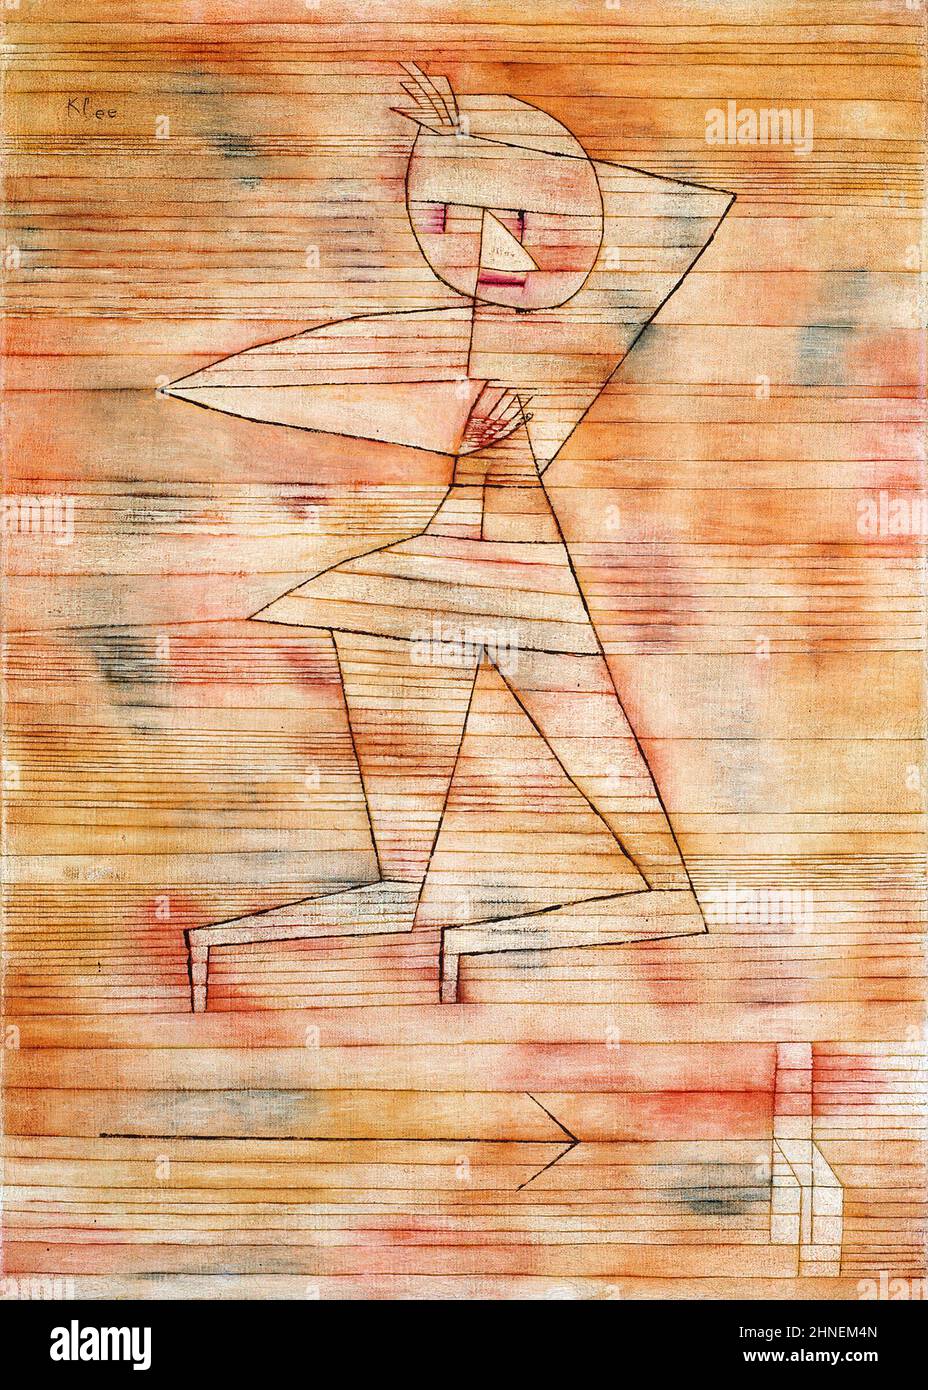 Fliehender Geist von Paul Klee (1879-1940), Öl auf Leinwand, 1929 Stockfoto